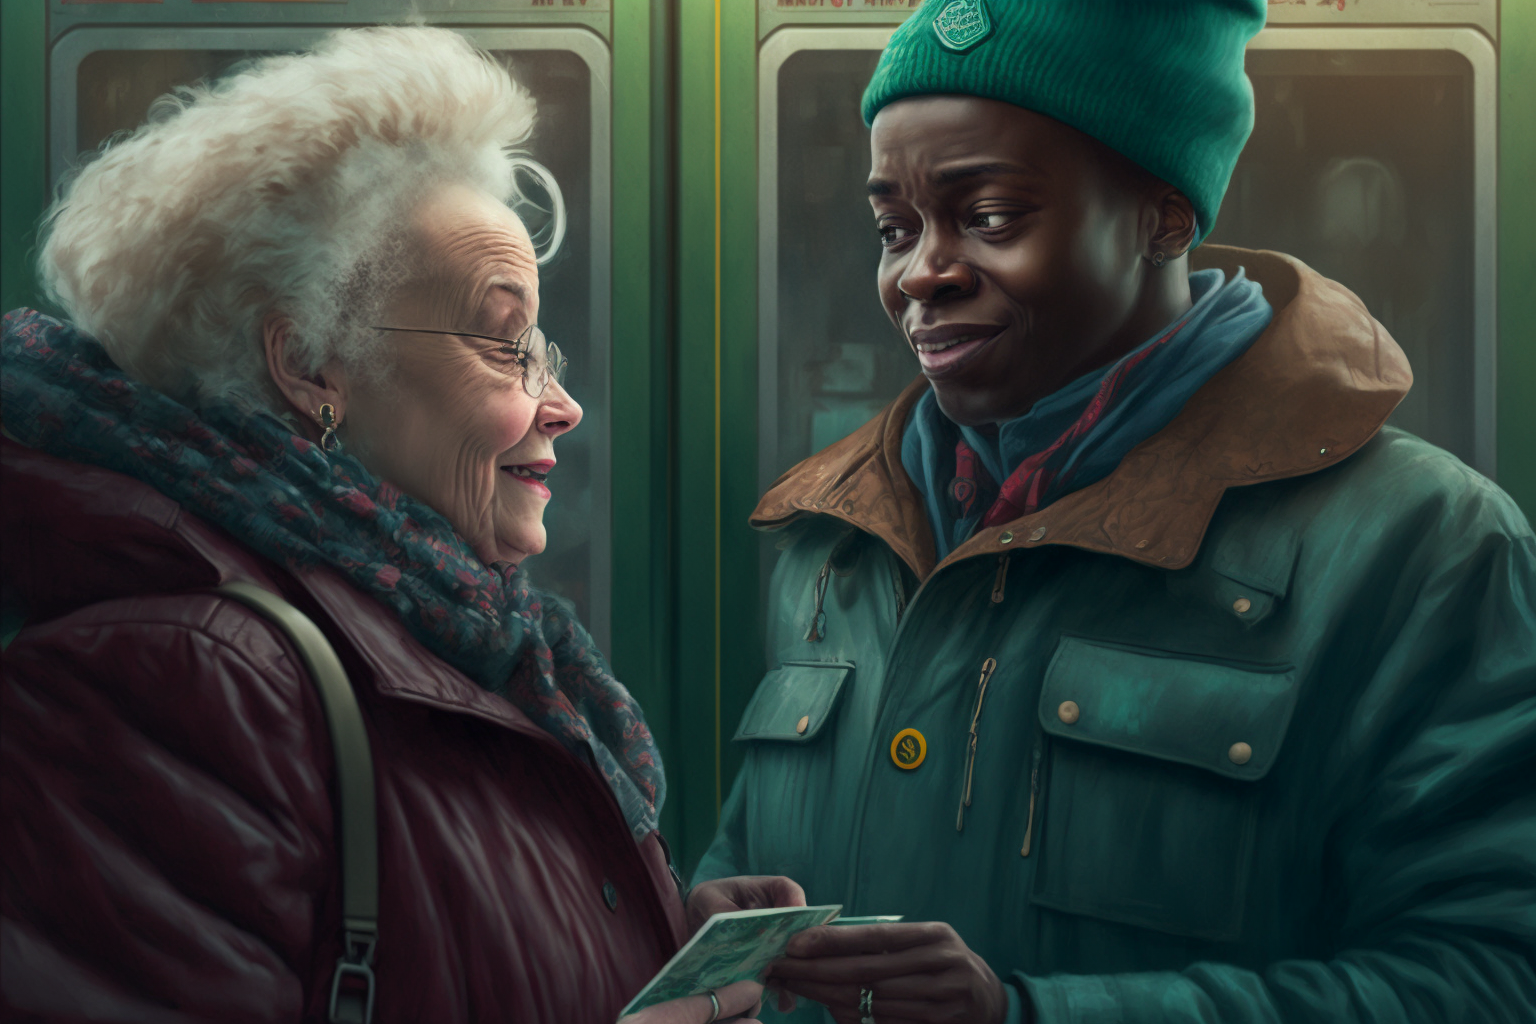 Illustration: Eine weiße ältere Dame und ein schwarzer junger Mann stehen in der U-Bahn. Sie halten ein Ticket in der Hand und lächeln sich an.